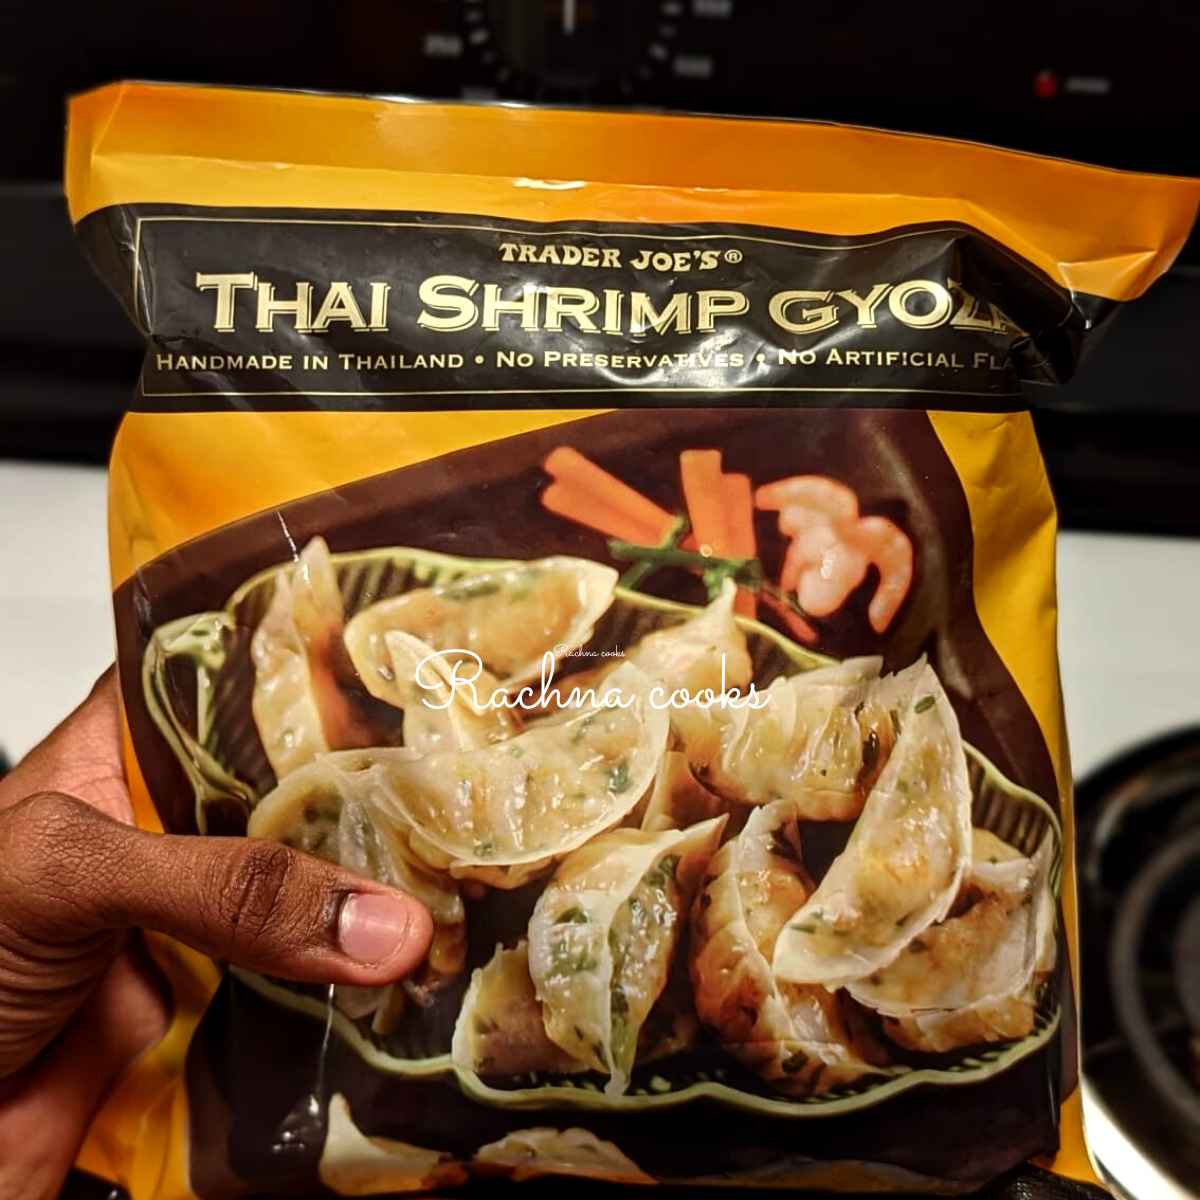 A pack of Trader Joe's Thai Shrimp Gyoza